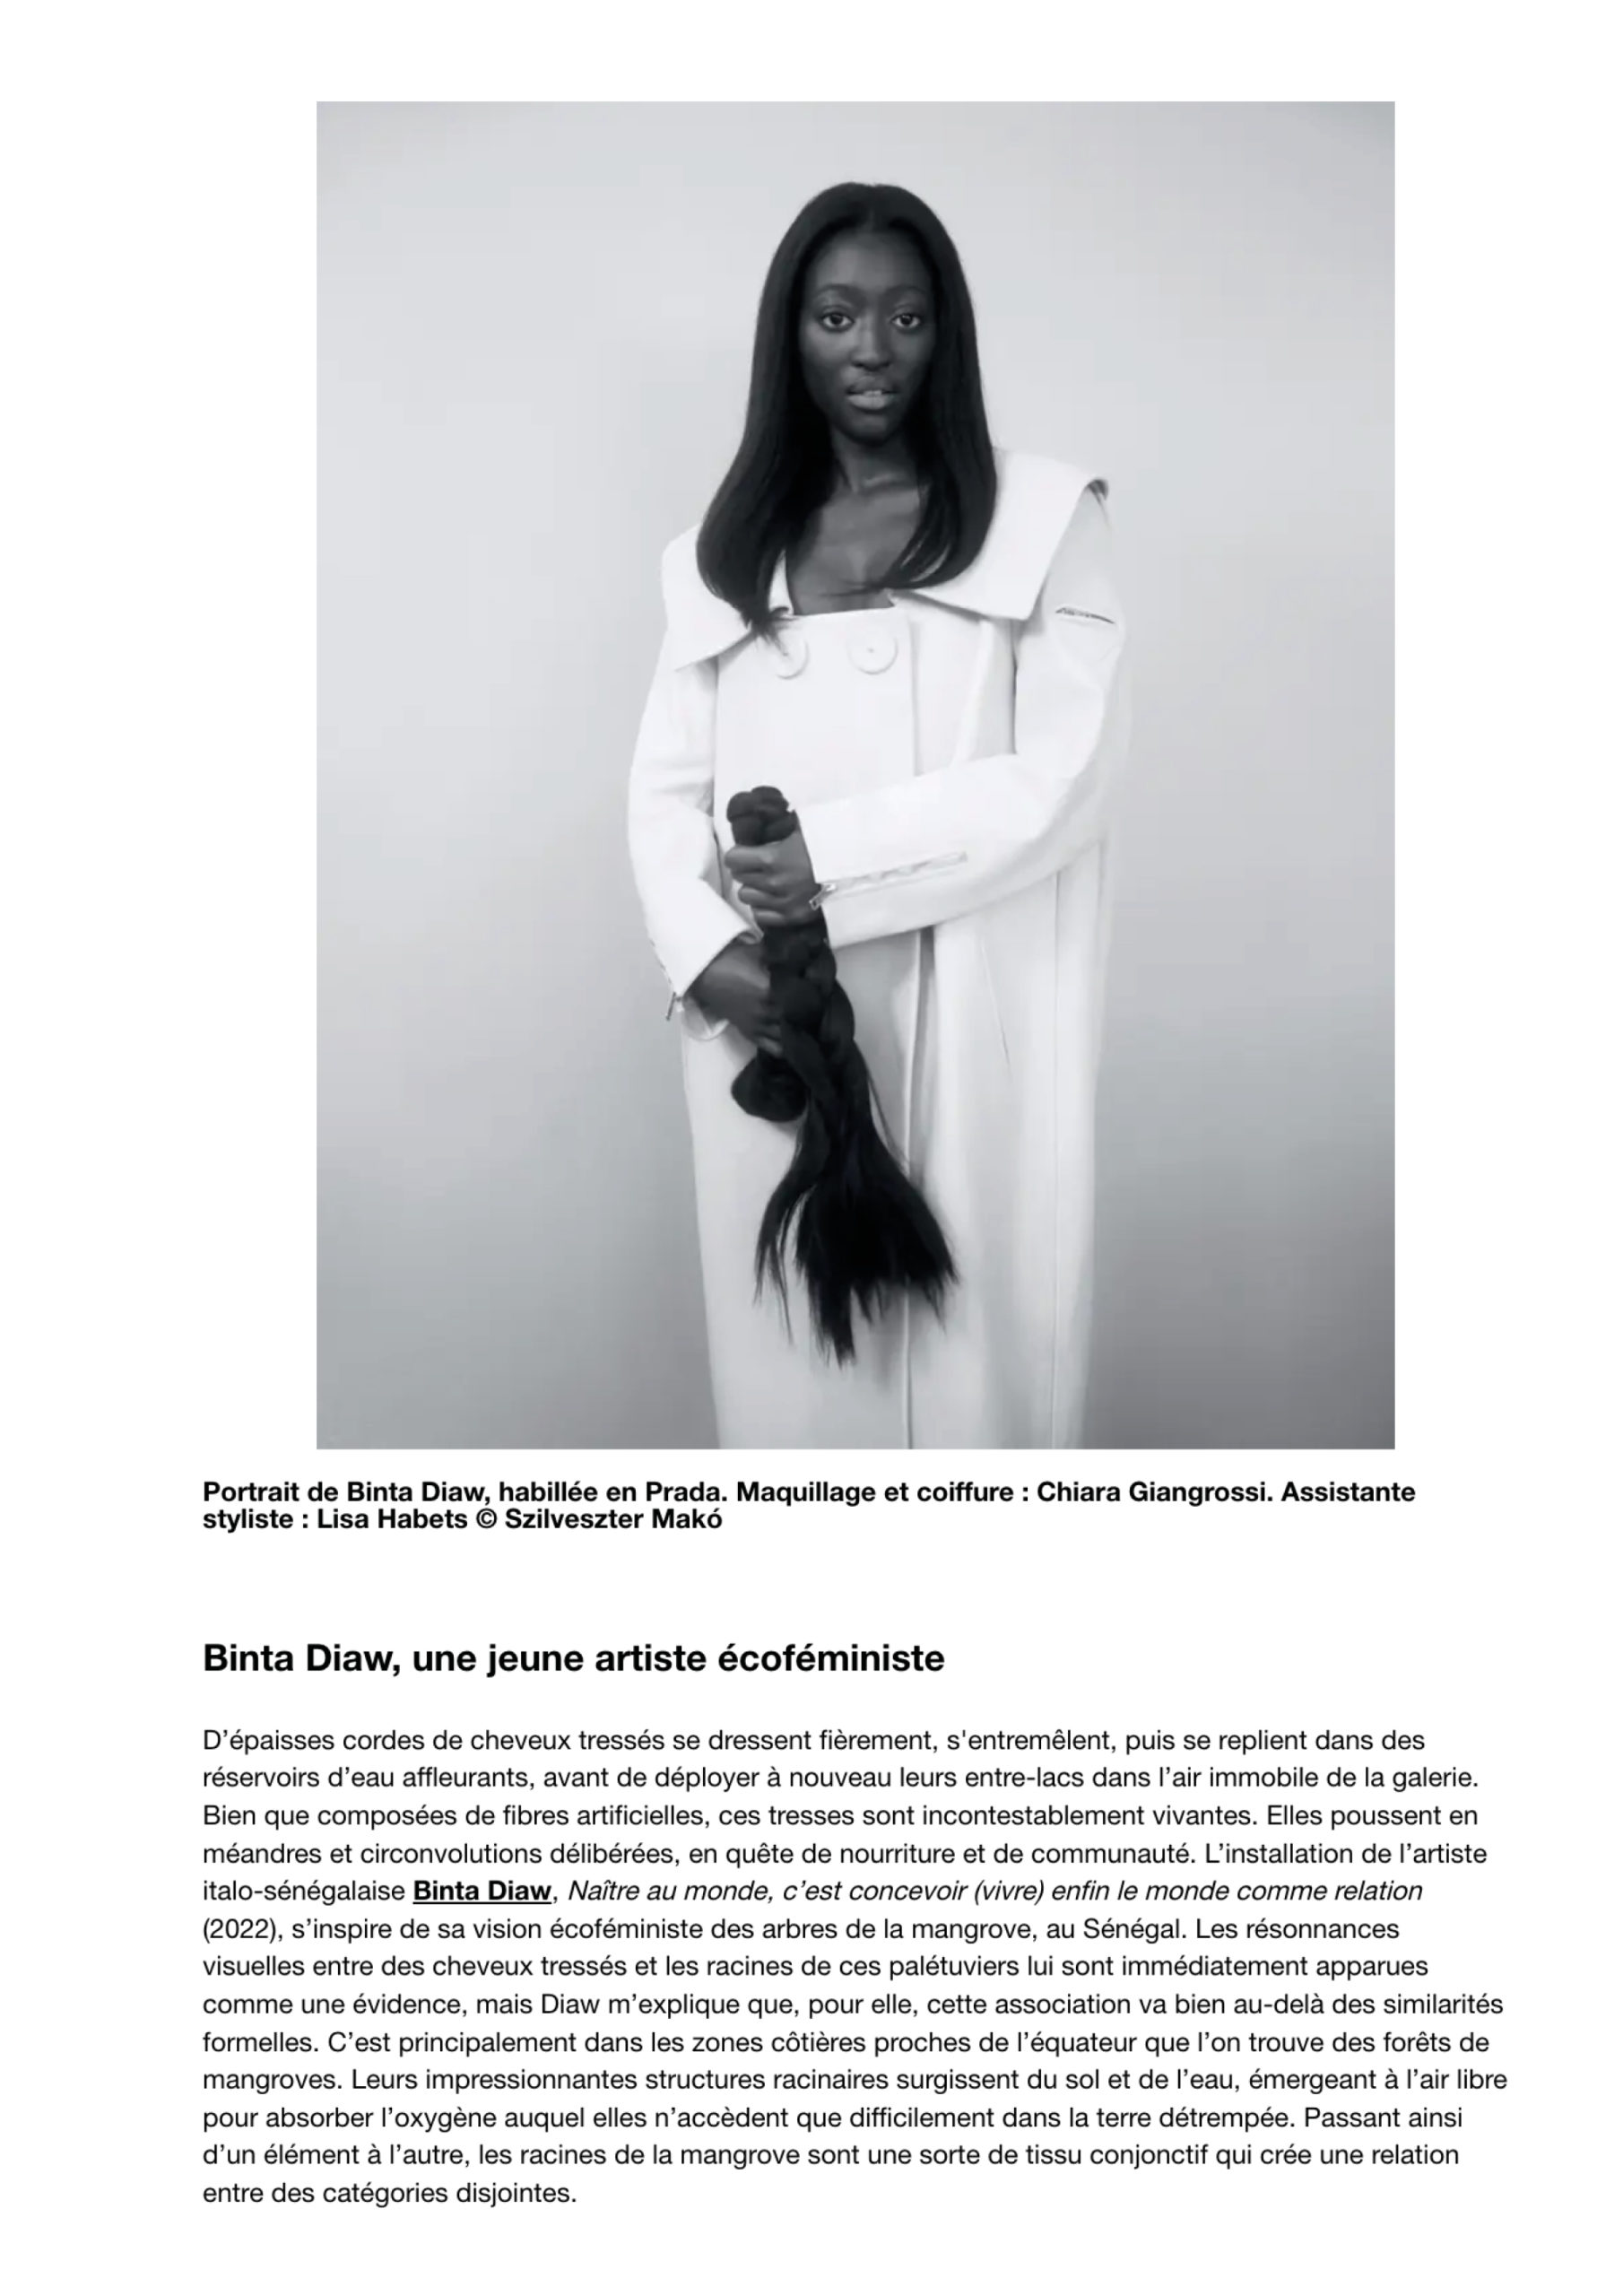 Rencontre avec l'art écoféministe de Binta Diaw : quand le cheveu tressé se fait paysage